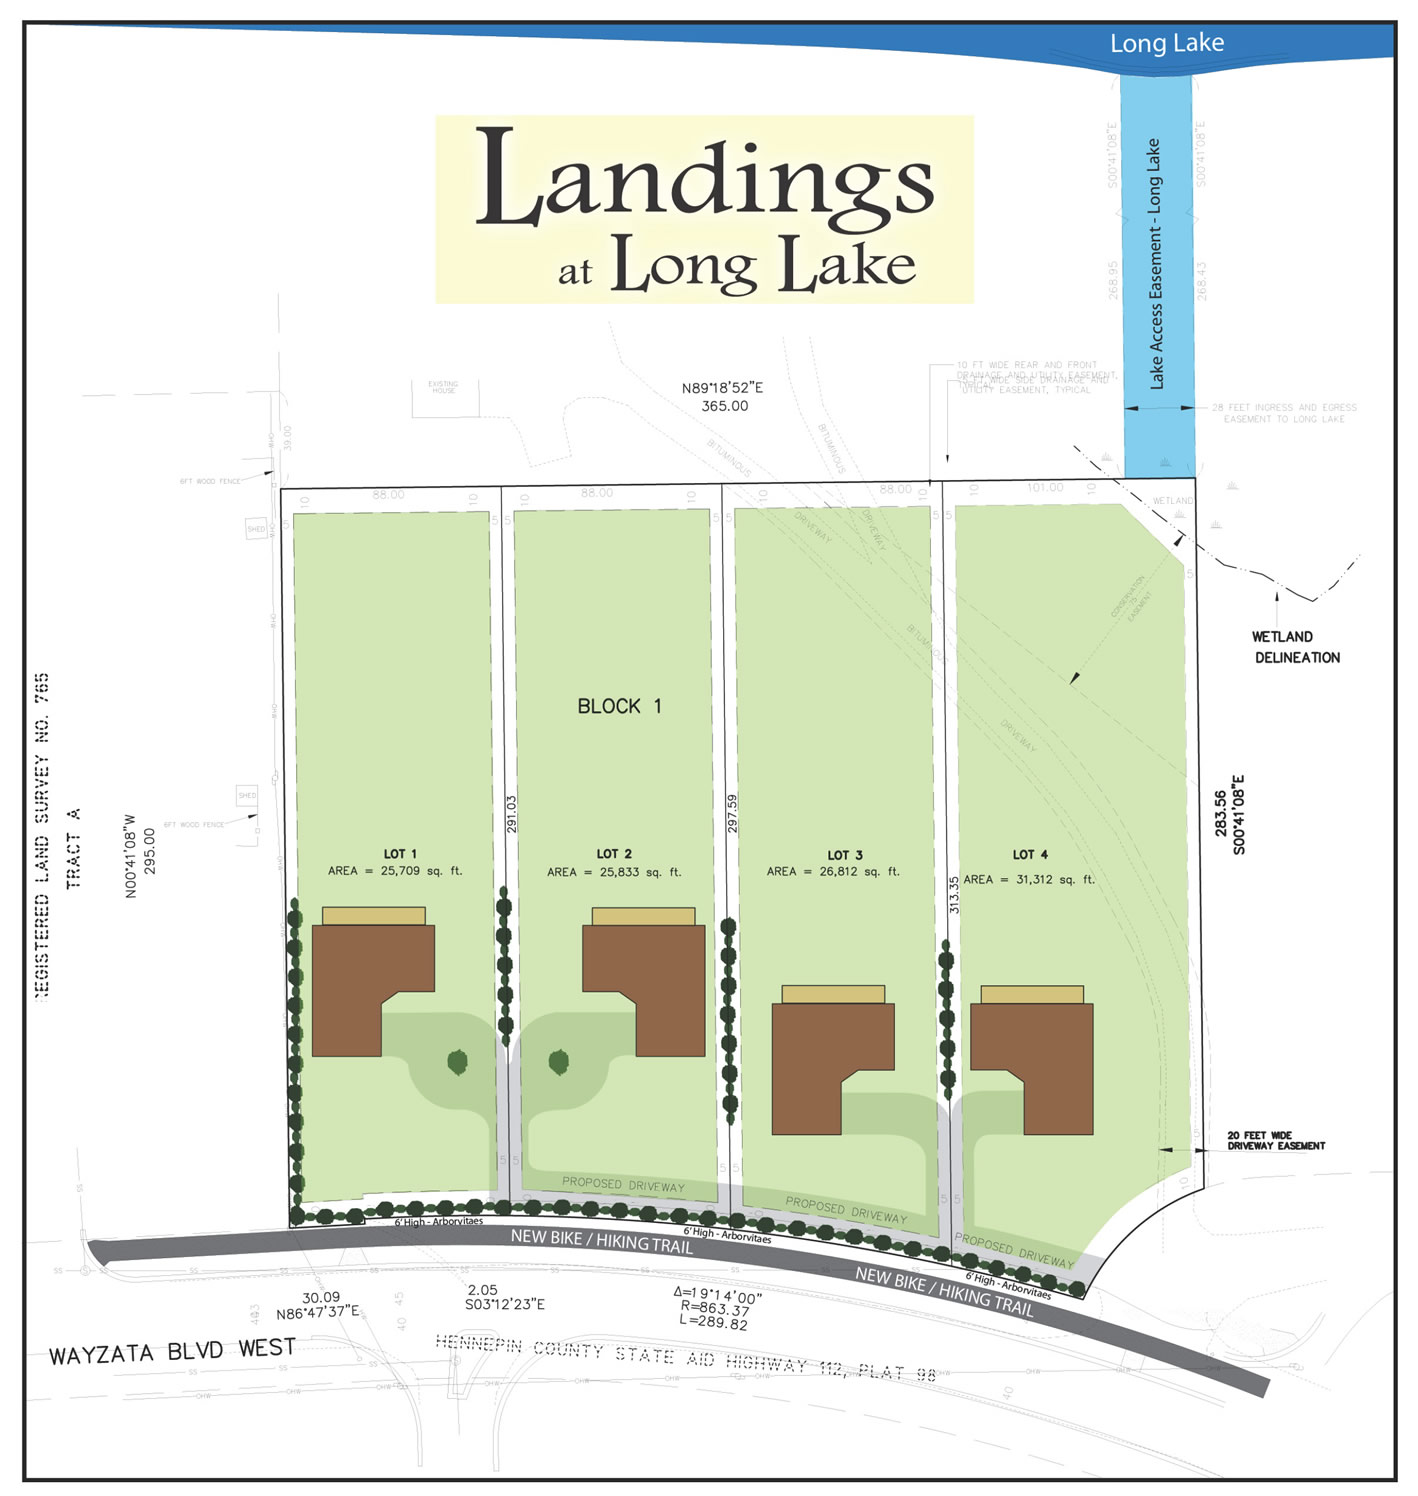 The Landings at Long Lake, MN